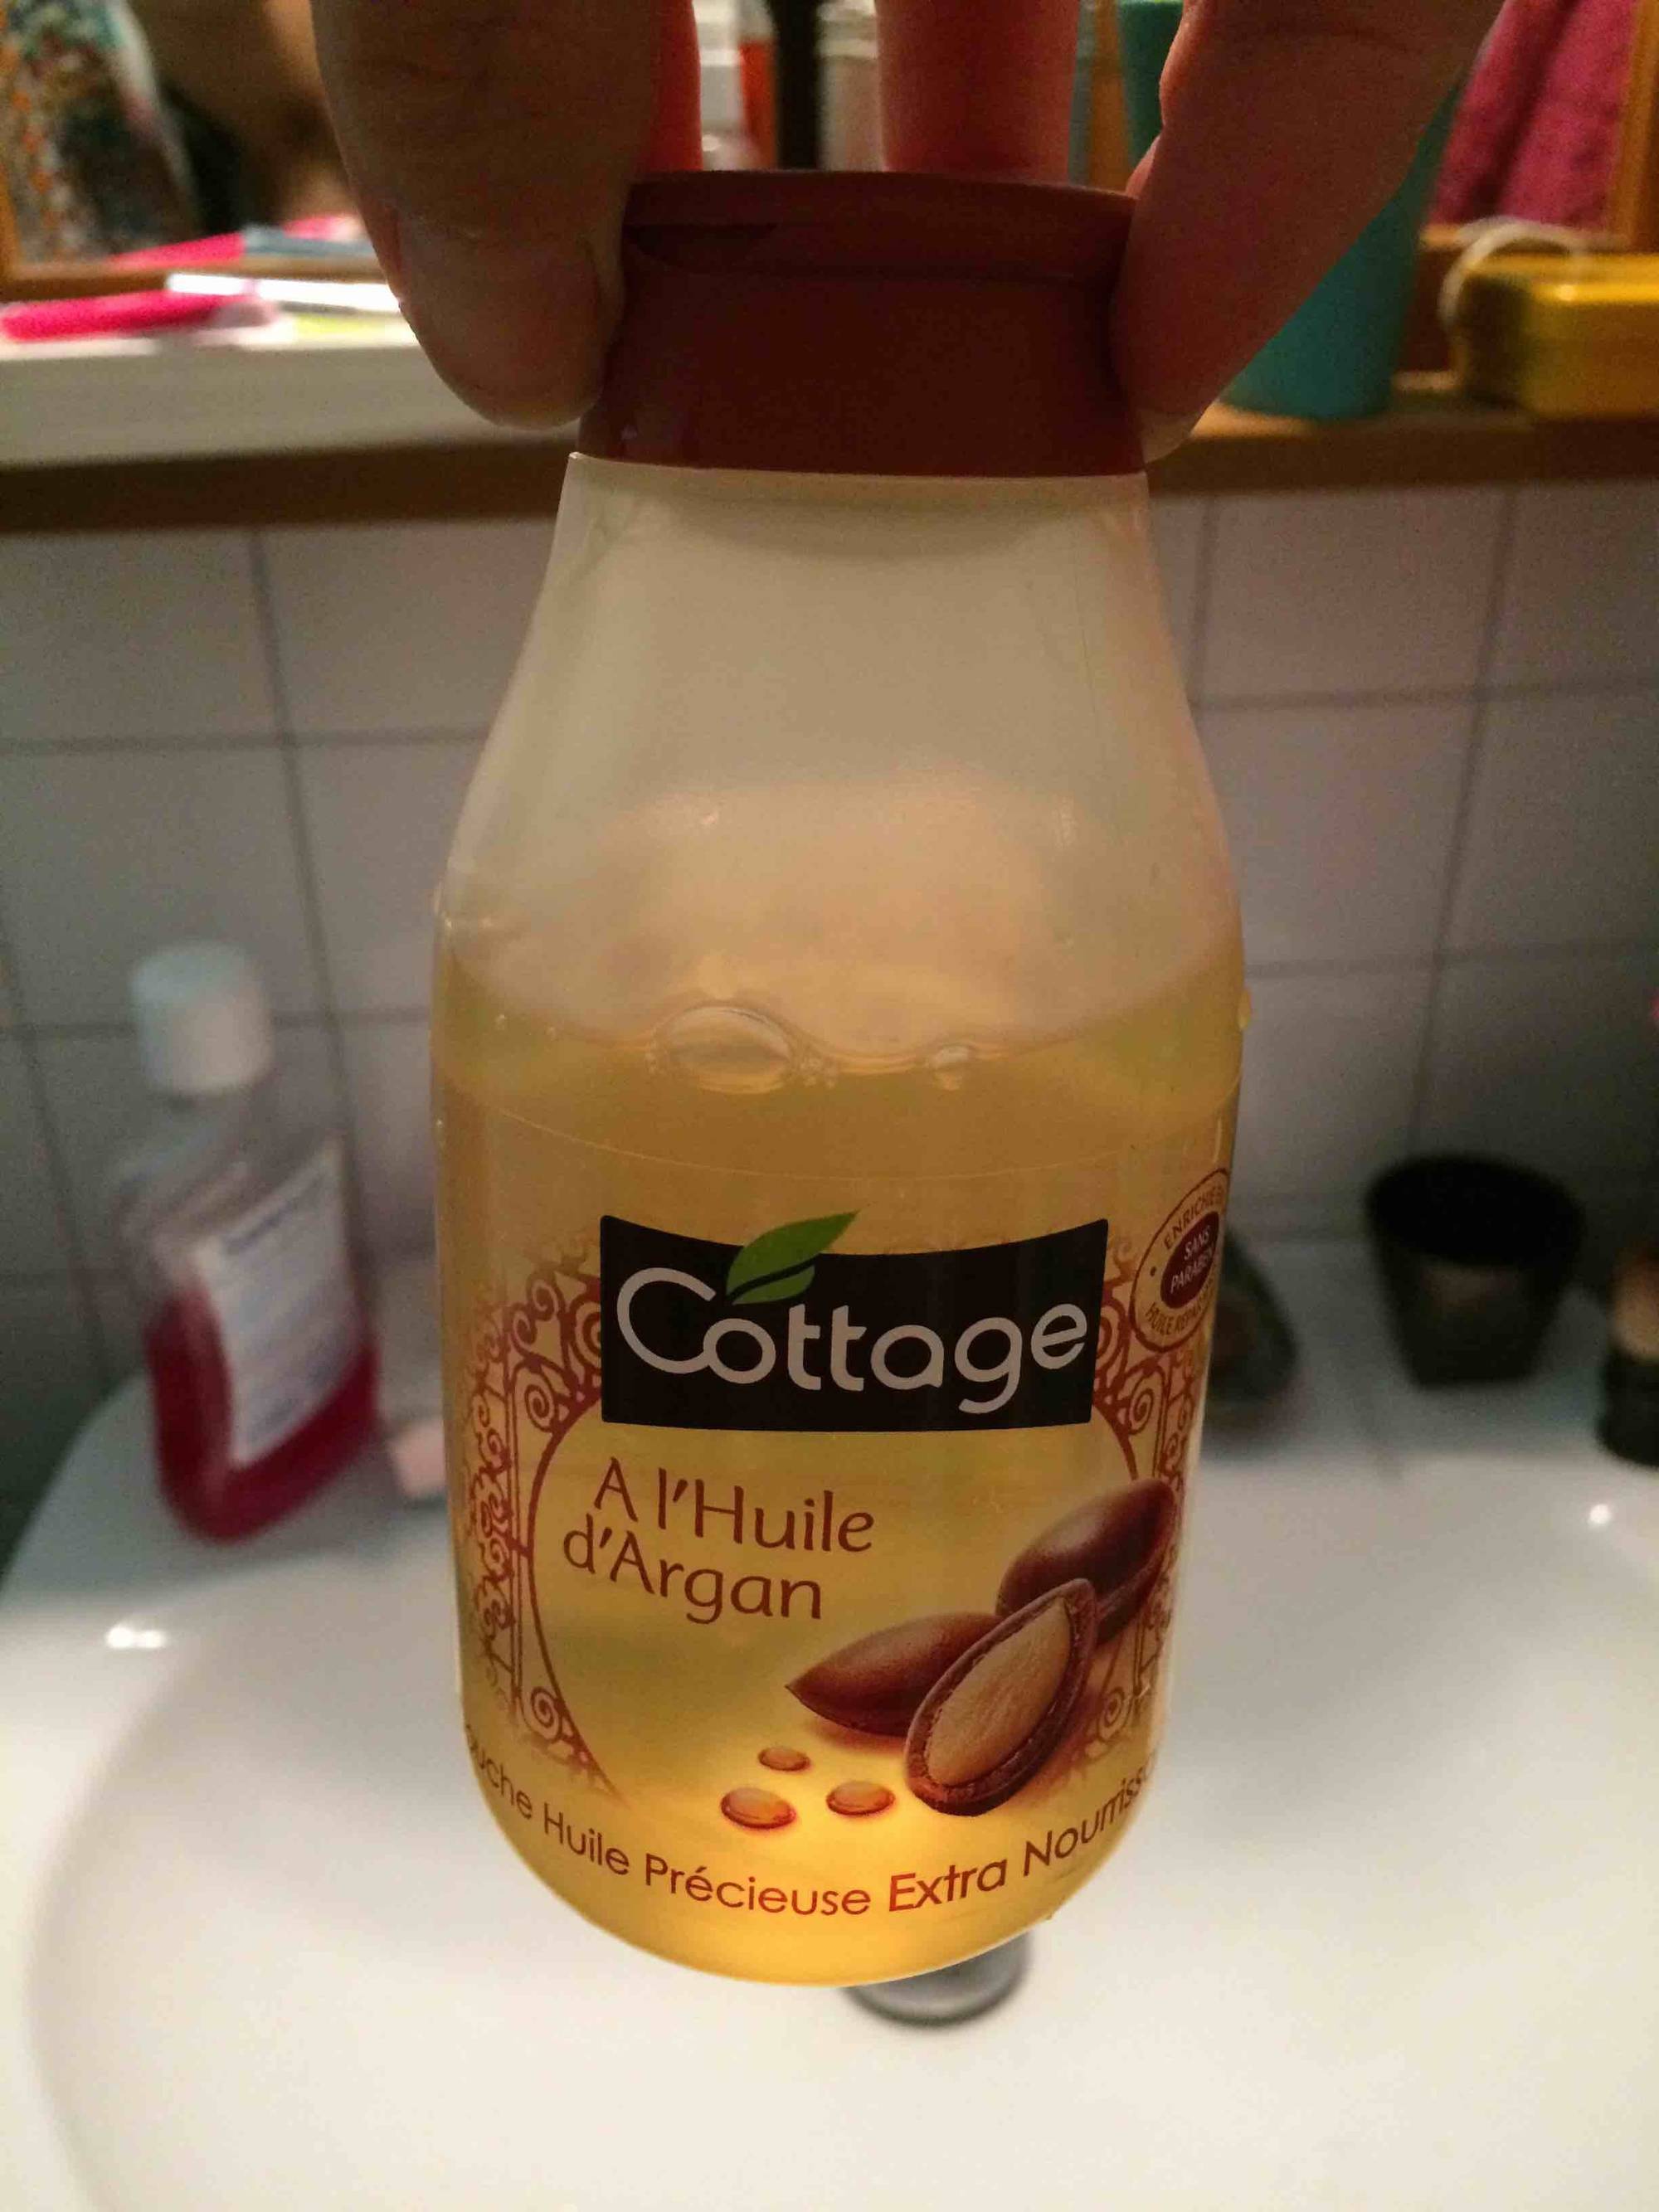 COTTAGE - A l'huile d'argan - Douche huile précieuse extra nourrissante